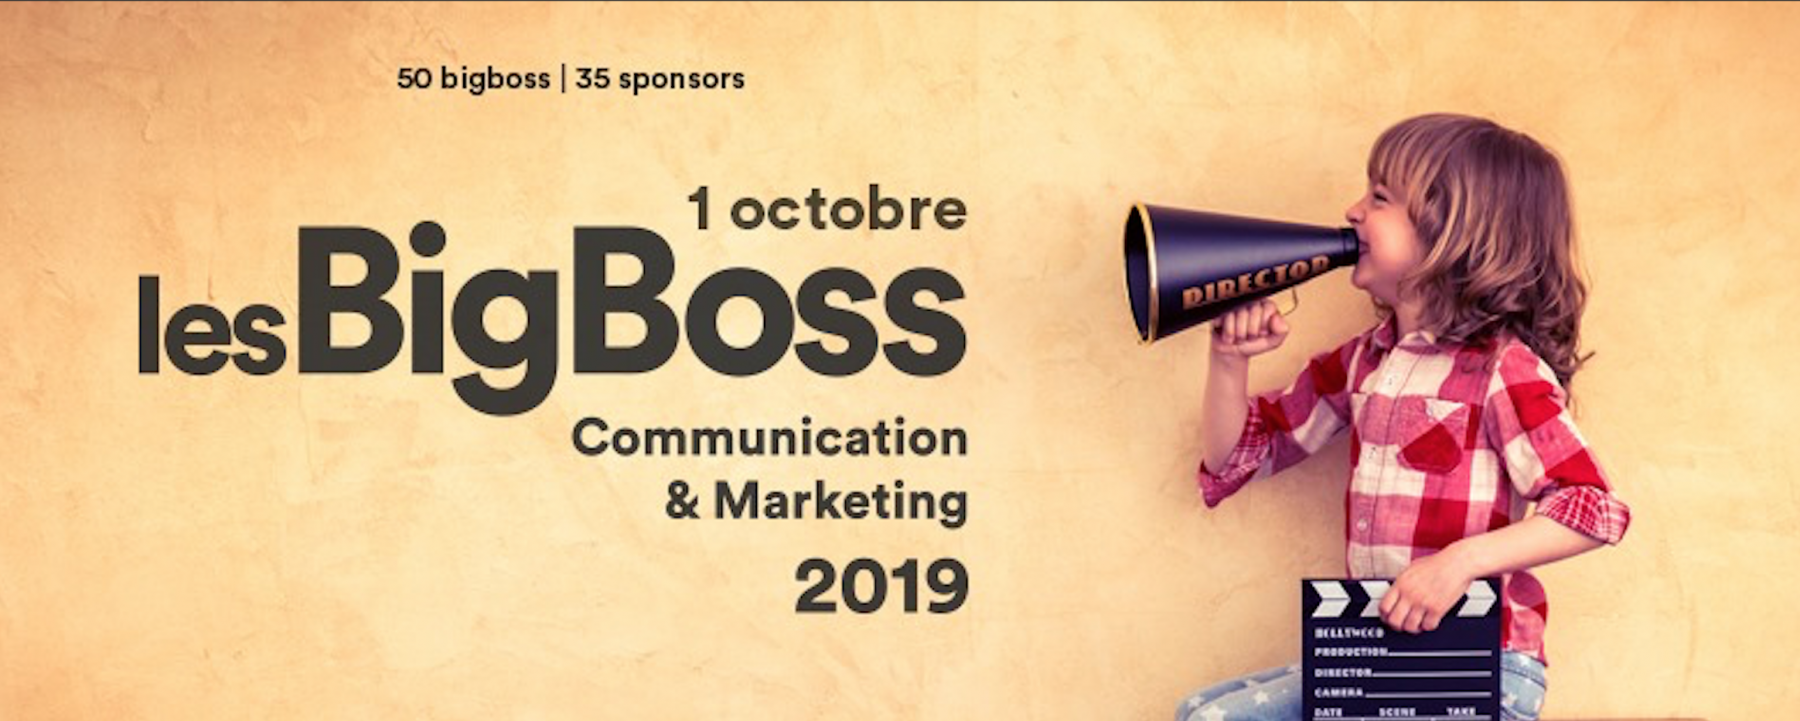 LesBigBoss Communication&Marketing 2019